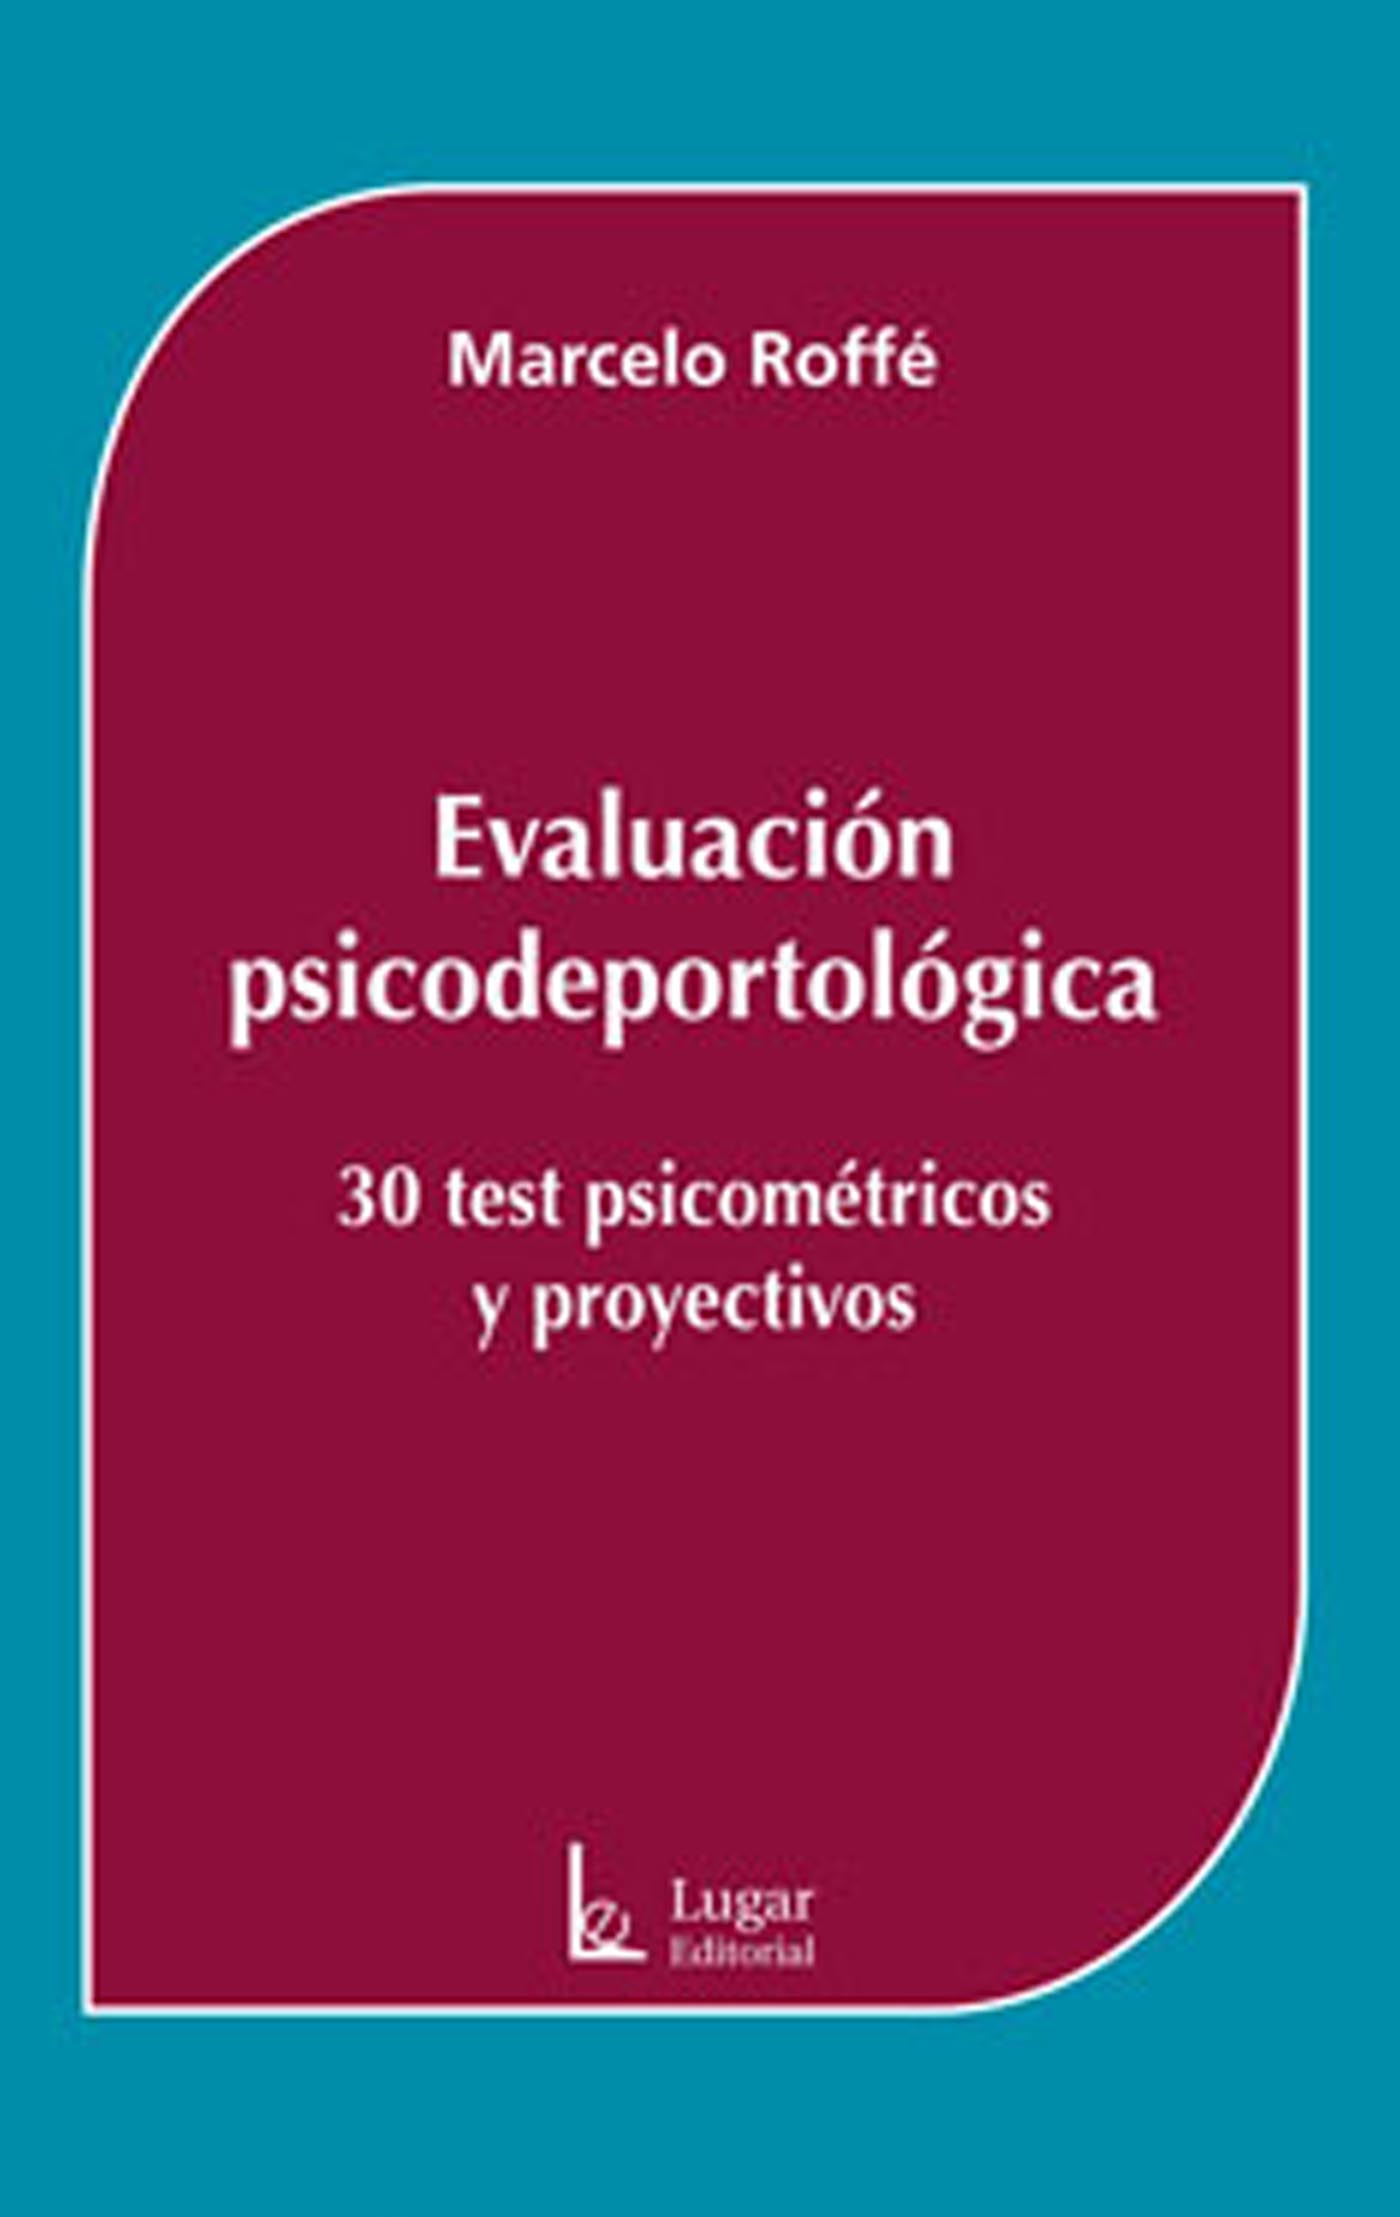 Evaluación psicodeportológica